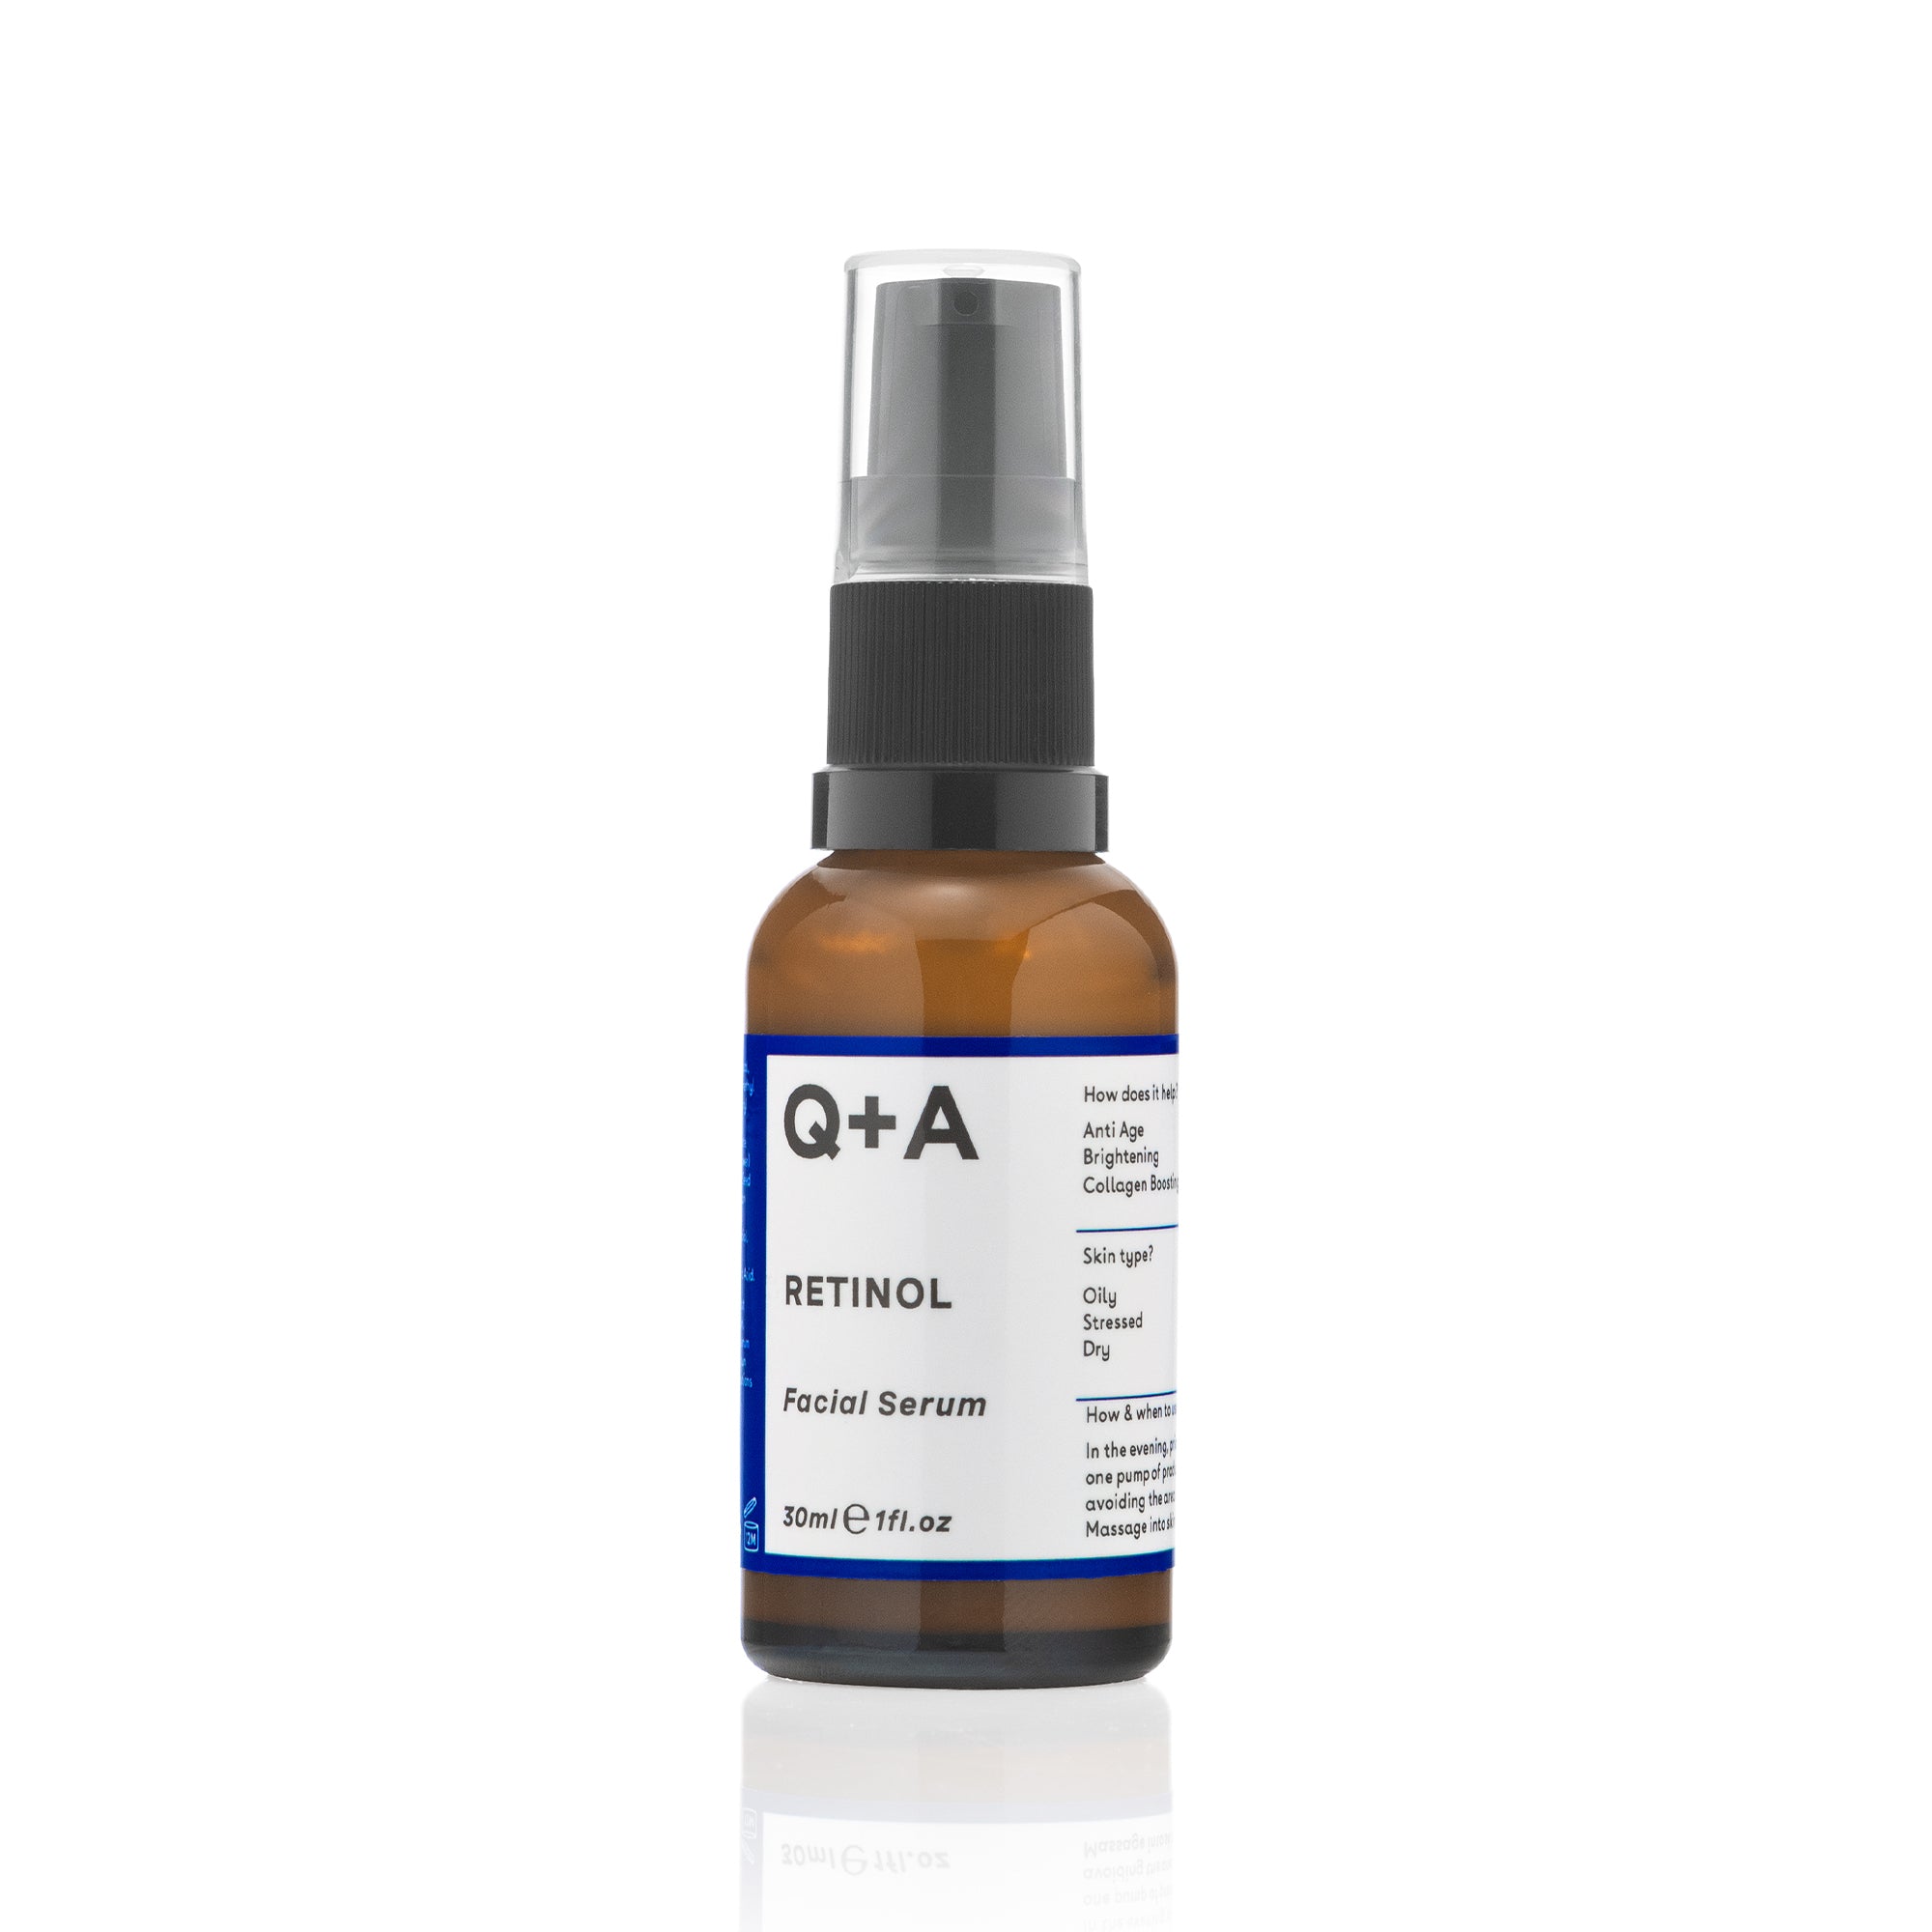 Q+A Retinol Facial Serum Bottle with pump